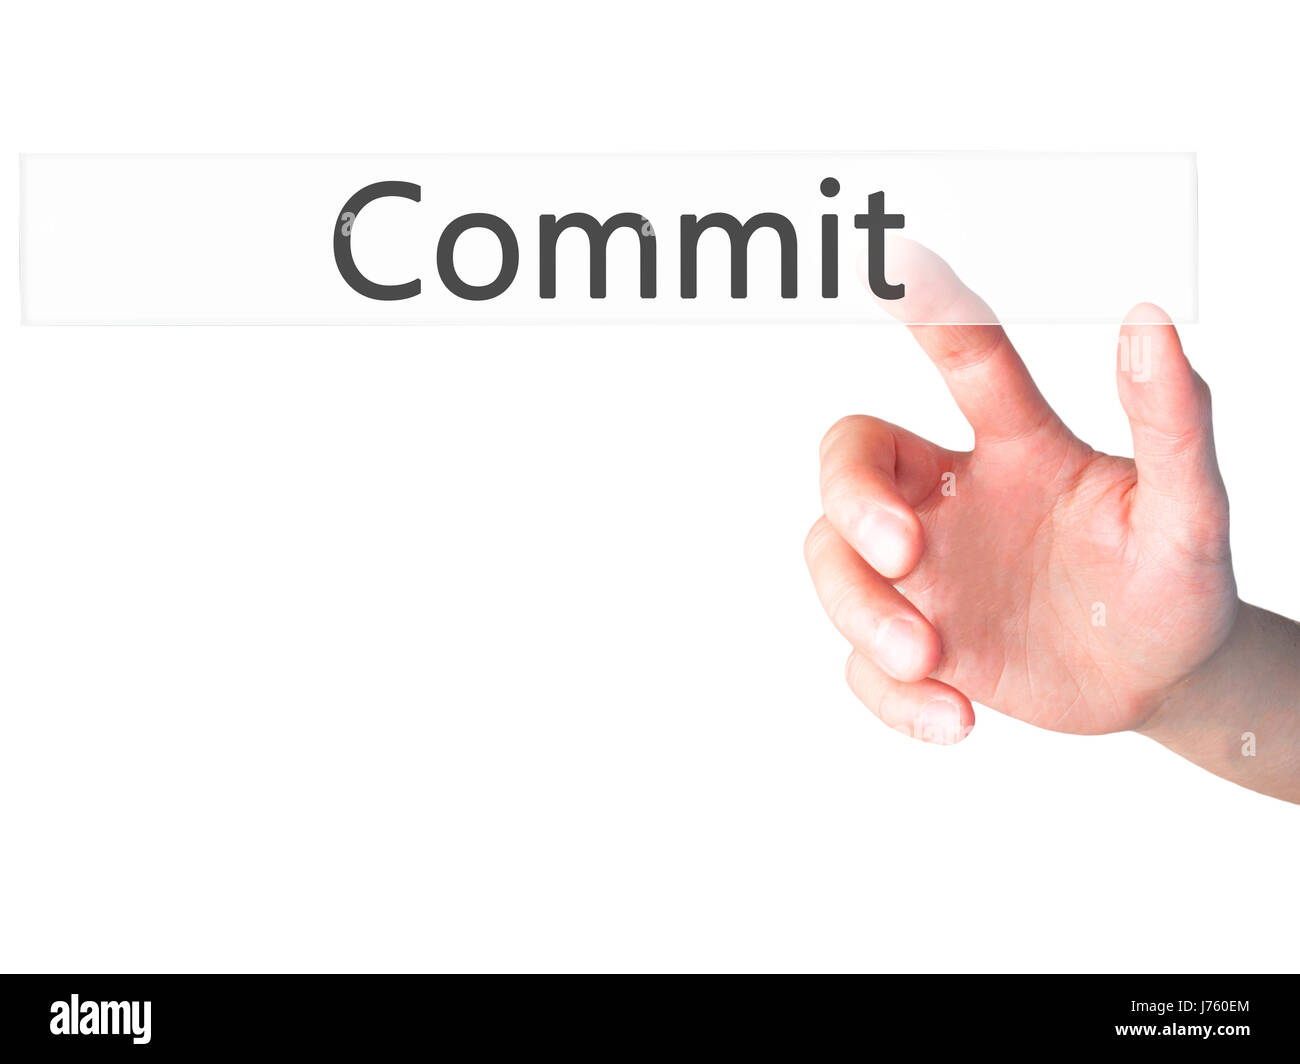 Commit - Hand drücken einer Taste auf unscharfen Hintergrund Konzept. Wirtschaft, Technologie, Internet-Konzept. Stock Foto Stockfoto